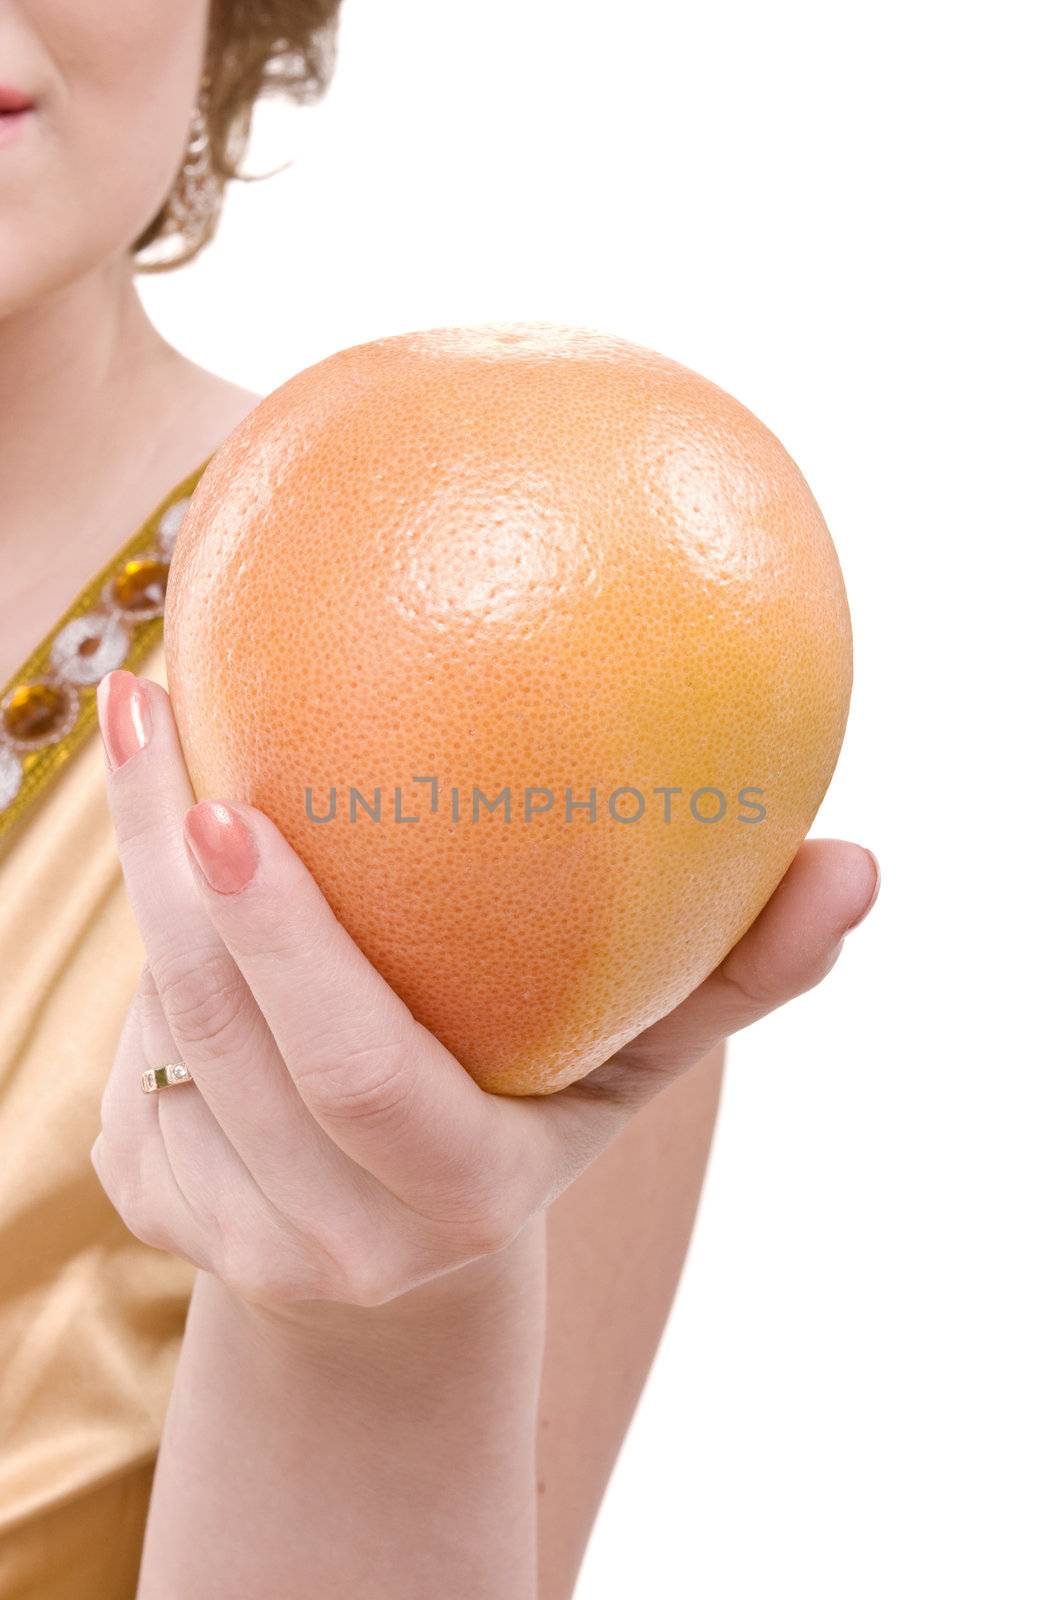 Grapefruit in a female hand by iryna_rasko